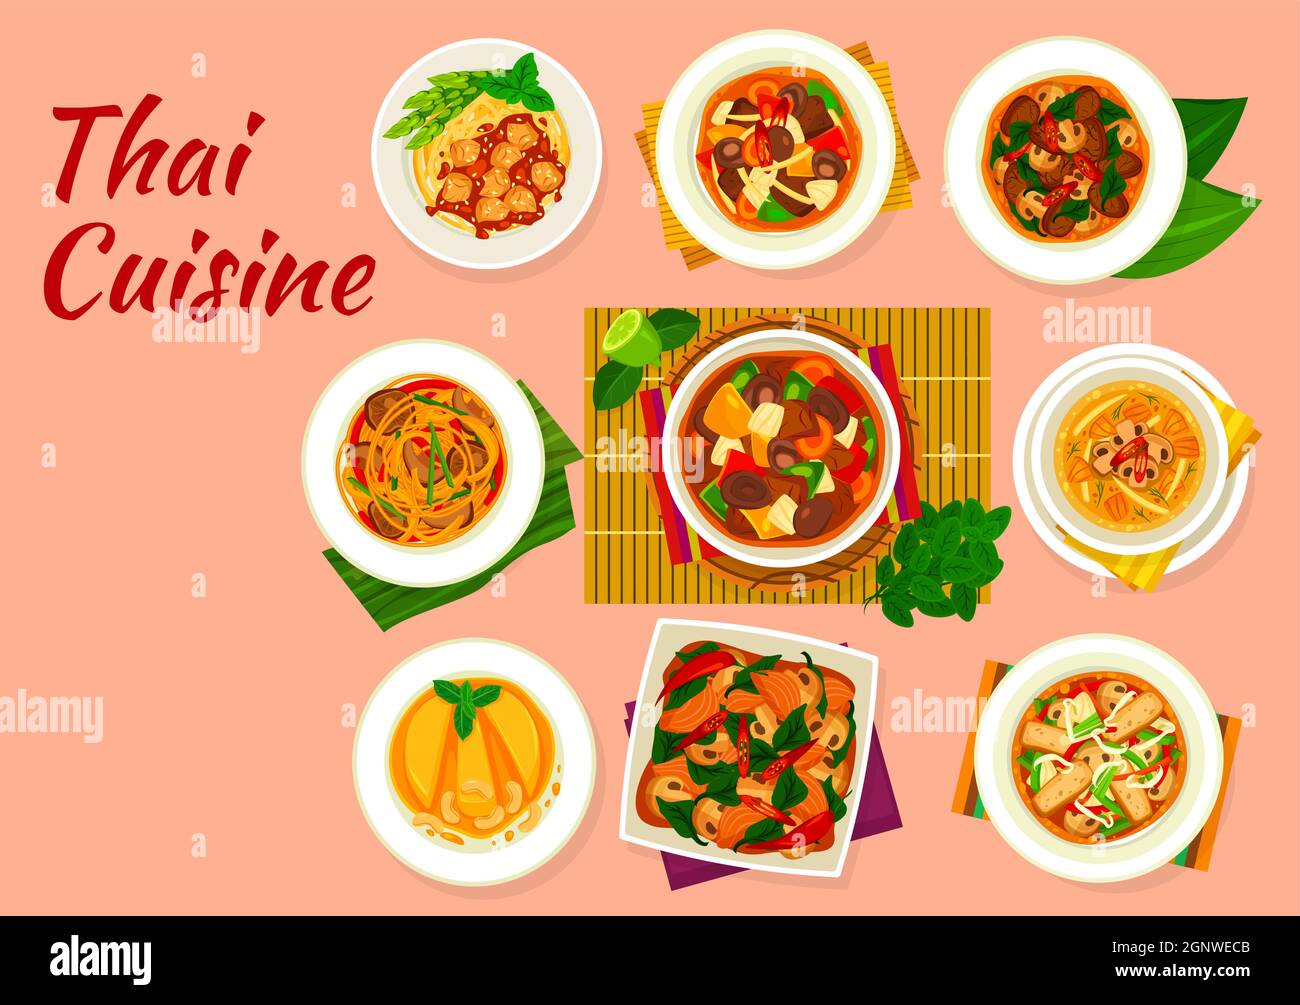 Cuisine thaïlandaise, plats vectoriels avec des plats asiatiques de viande, de poisson et de légumes. Nouilles de riz au poulet et curry aux champignons, bœuf à la sauce aux huîtres, sautés au saumon, basilic et tofu aux légumes, dessert à l'ananas Illustration de Vecteur